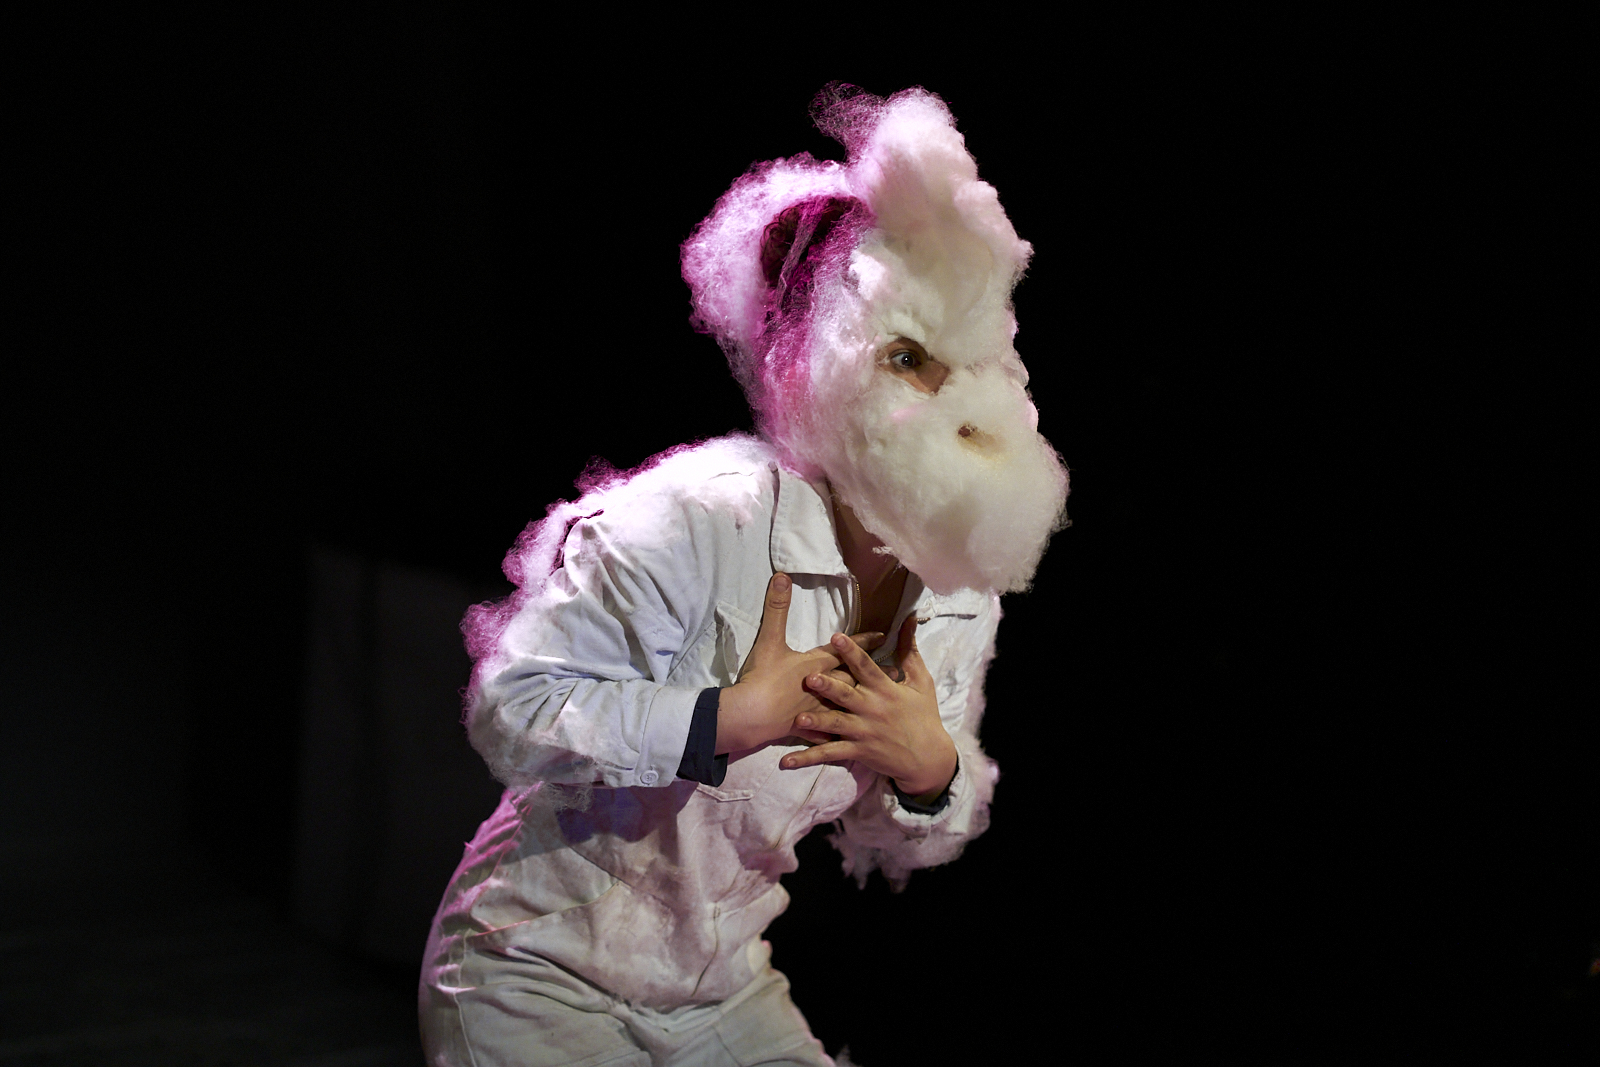 Performerin im weißen Ganzkörperanzug mit einer Maske aus Zuckerwatte, die wie eine Ziege aussieht.